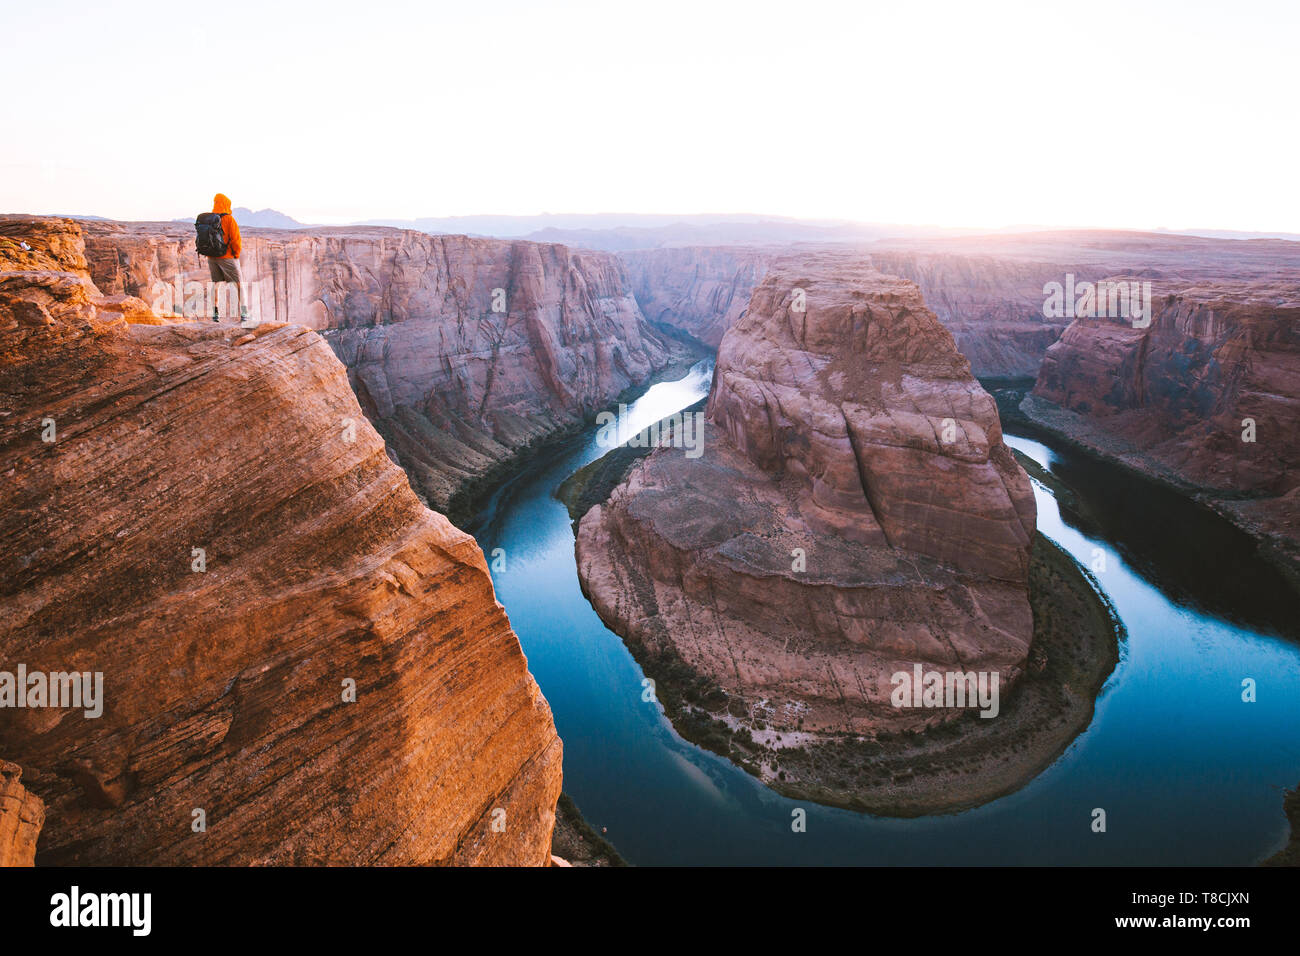 Un hombre caminante está de pie sobre acantilados disfrutando de la hermosa vista del río Colorado fluye a la famosa curva de herradura al atardecer, Arizona, EE.UU. Foto de stock